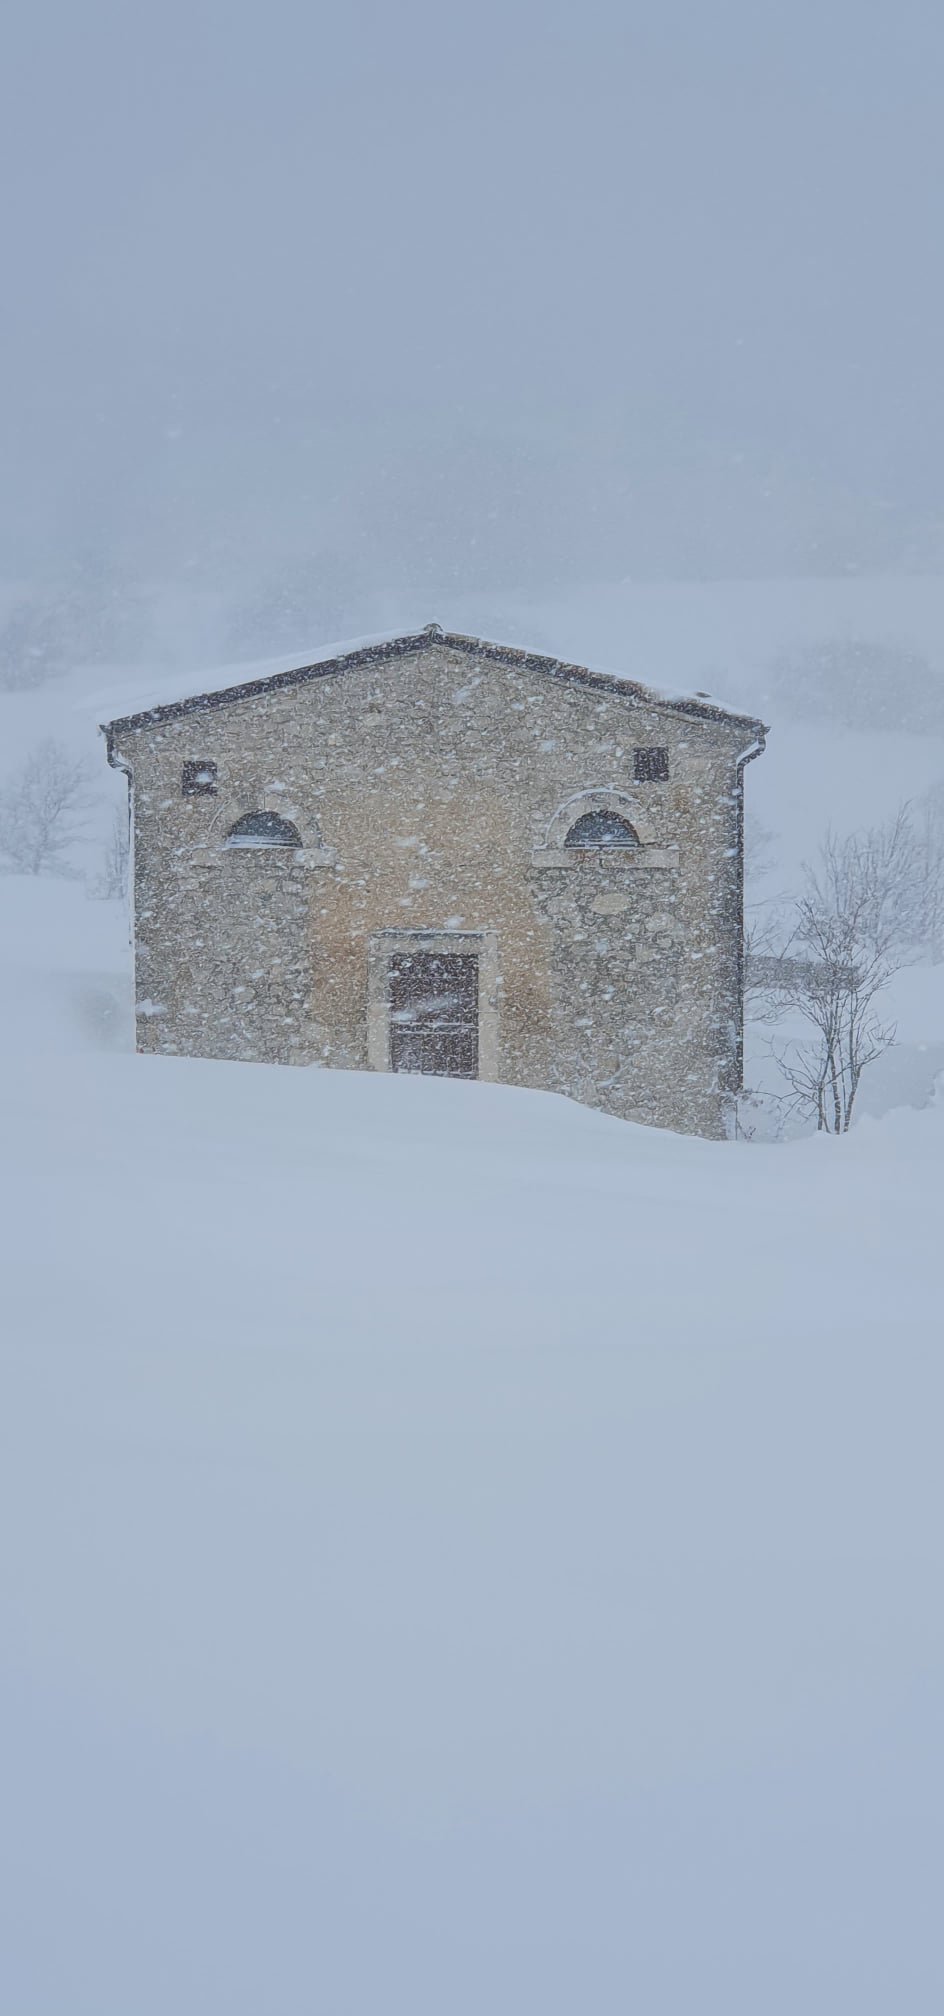 Il piccolo borgo di Roccacaramanico sommerso dalla nevicata record di marzo. Che magia!